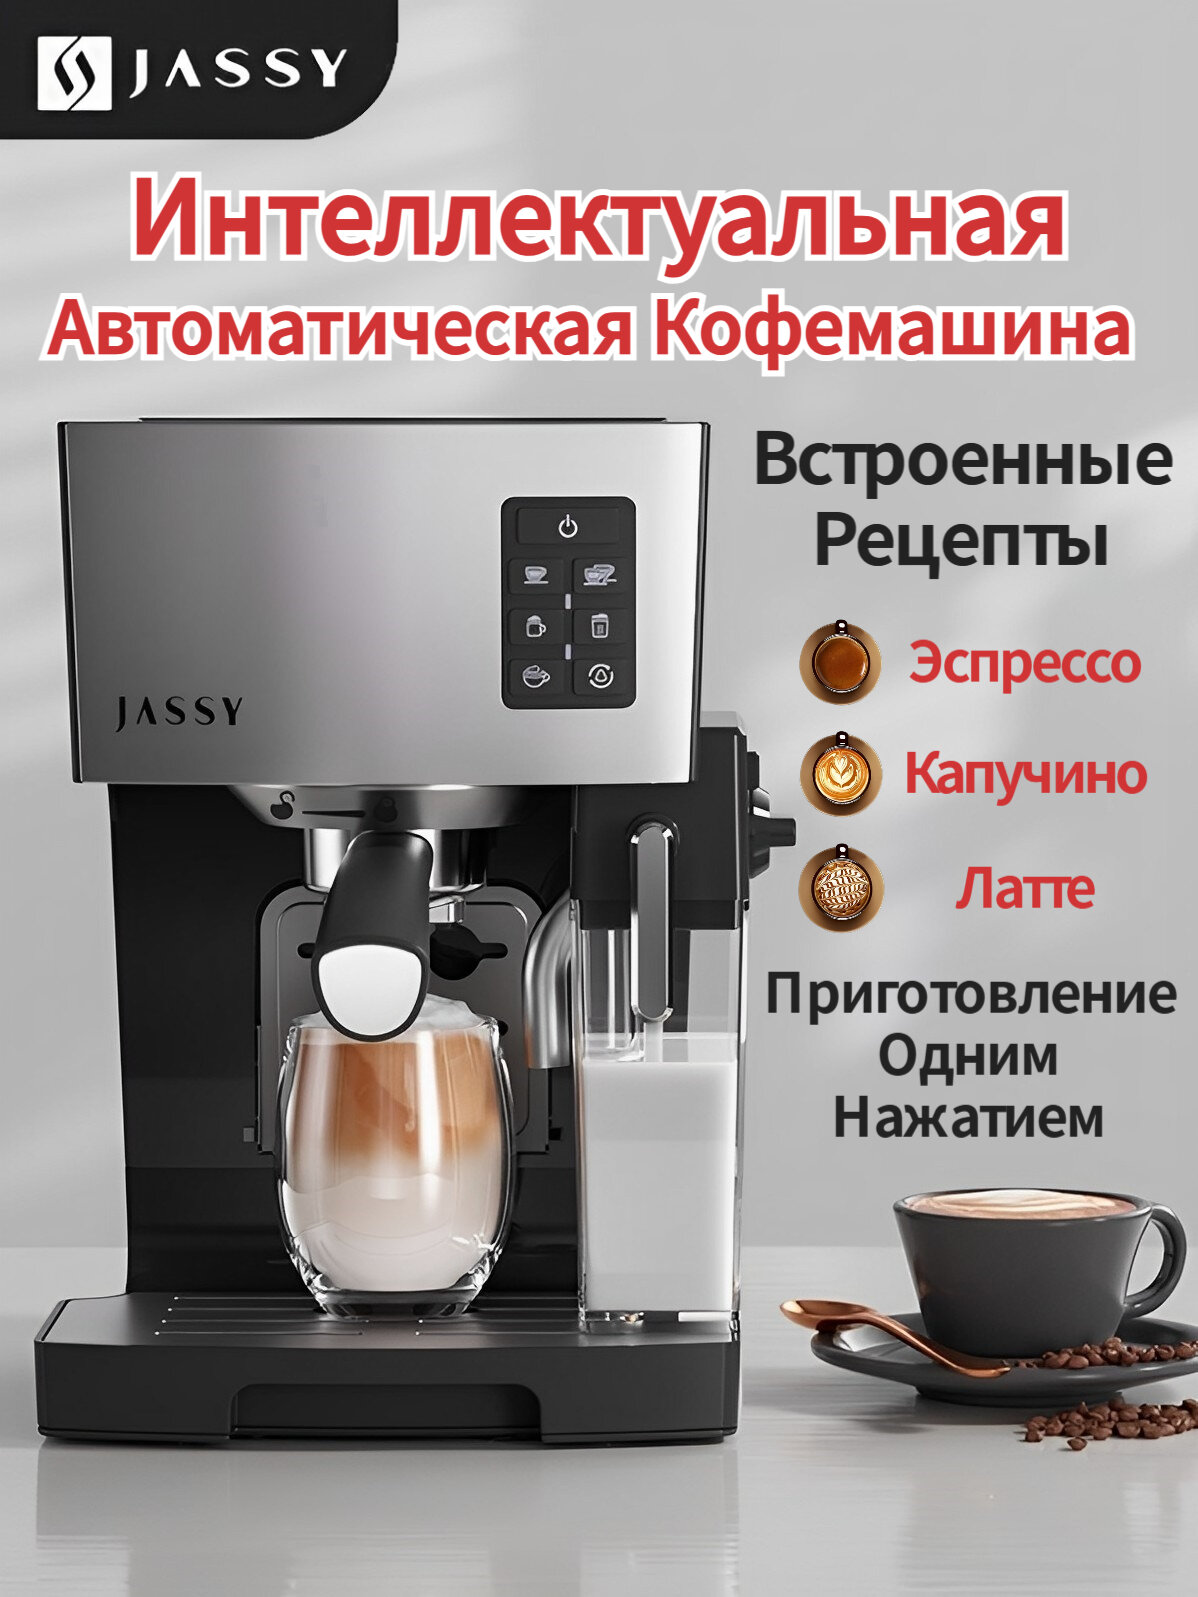 Автоматическая кофемашина с капучинатором JASSY встроенные рецепты автоматическая система вспенивания молока одновременная раздача на 2 чашки